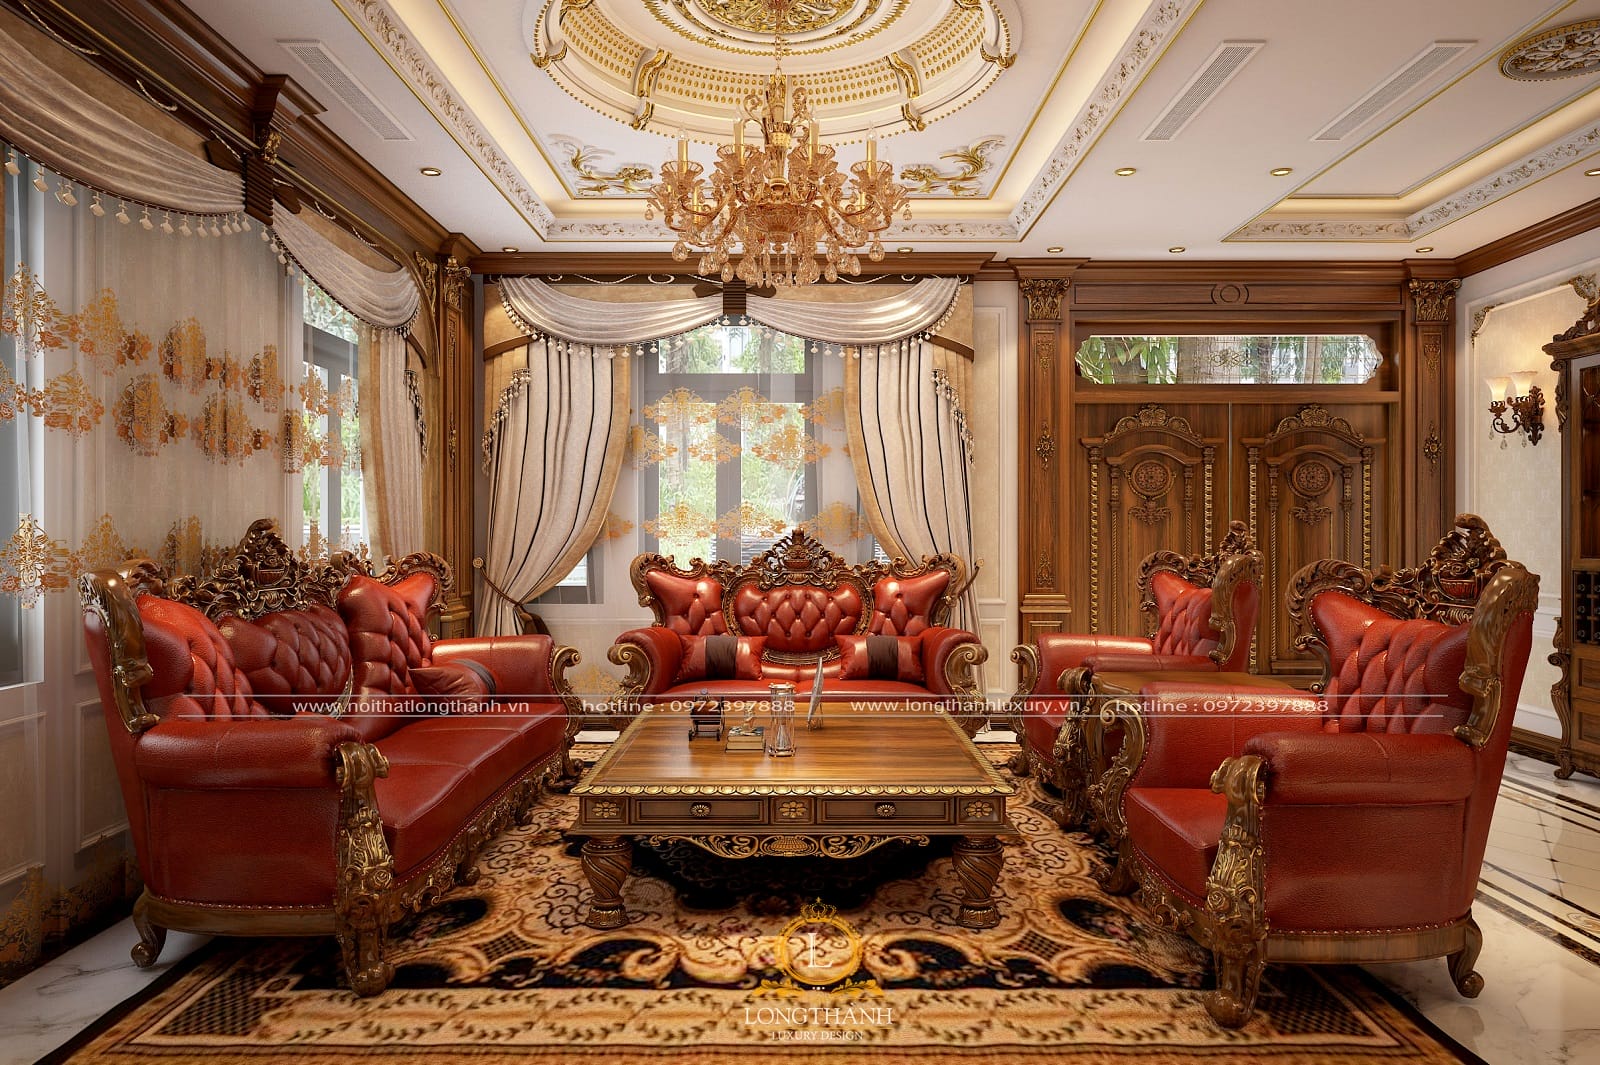 Trọn bộ sofa tân cổ điển đẹp cho khách hàng tại Vũng Tàu